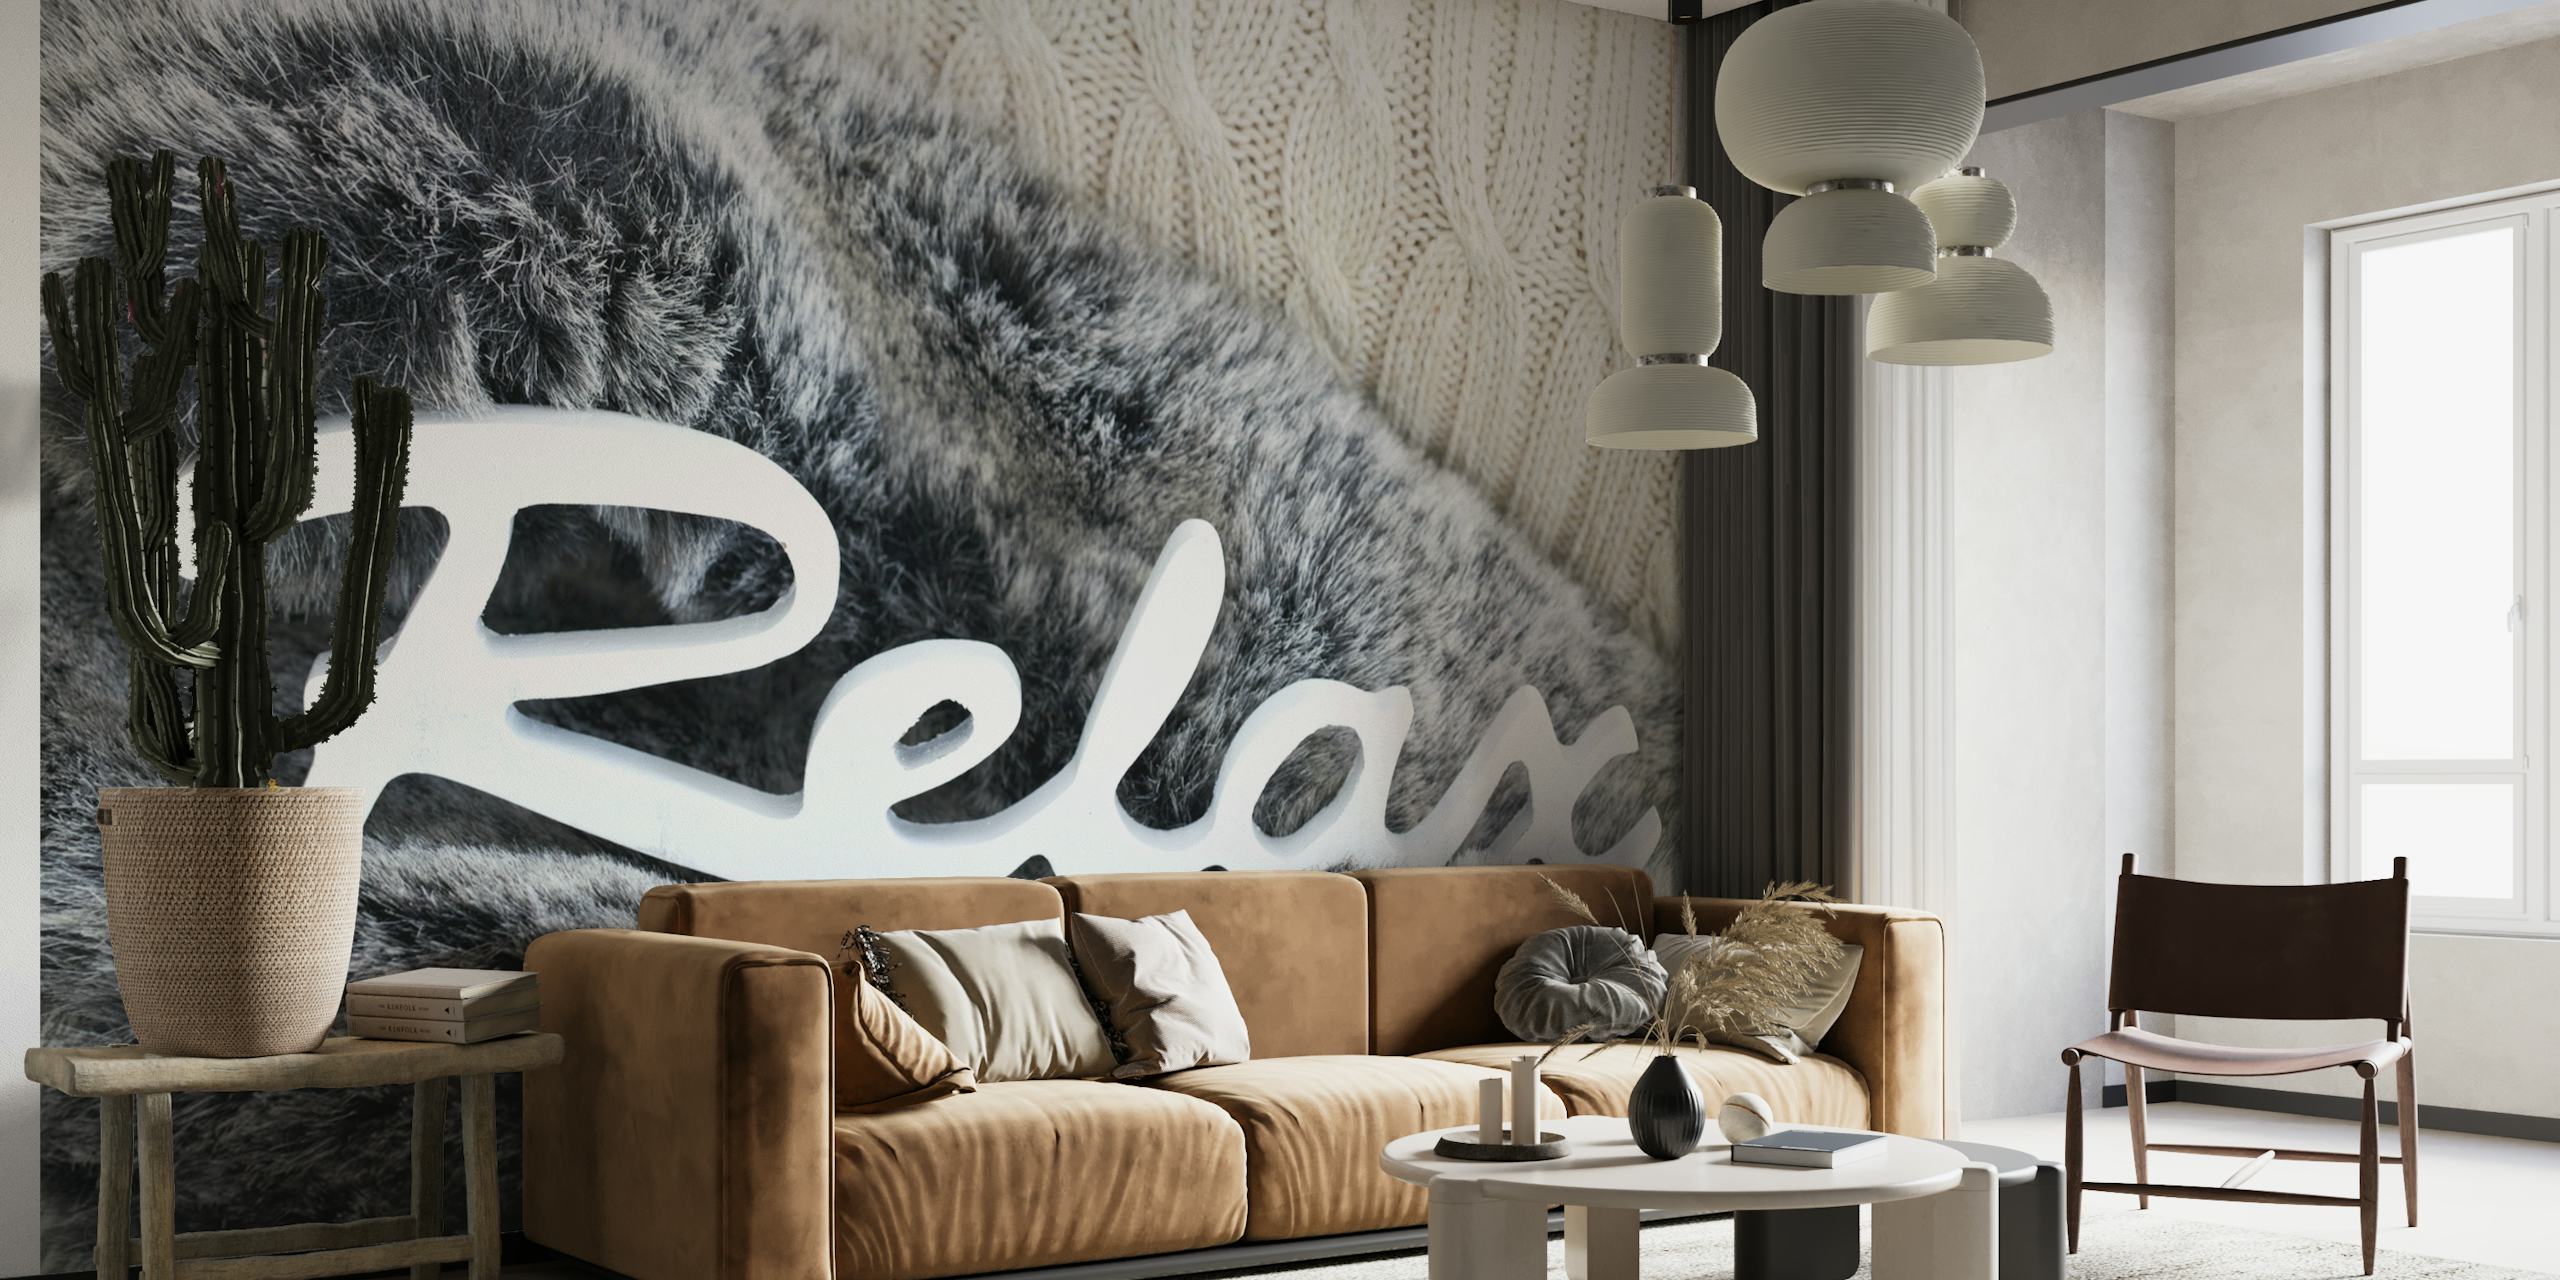 Fototapet med simulerad pälsstruktur och ordet "Relax" i stilfullt manus